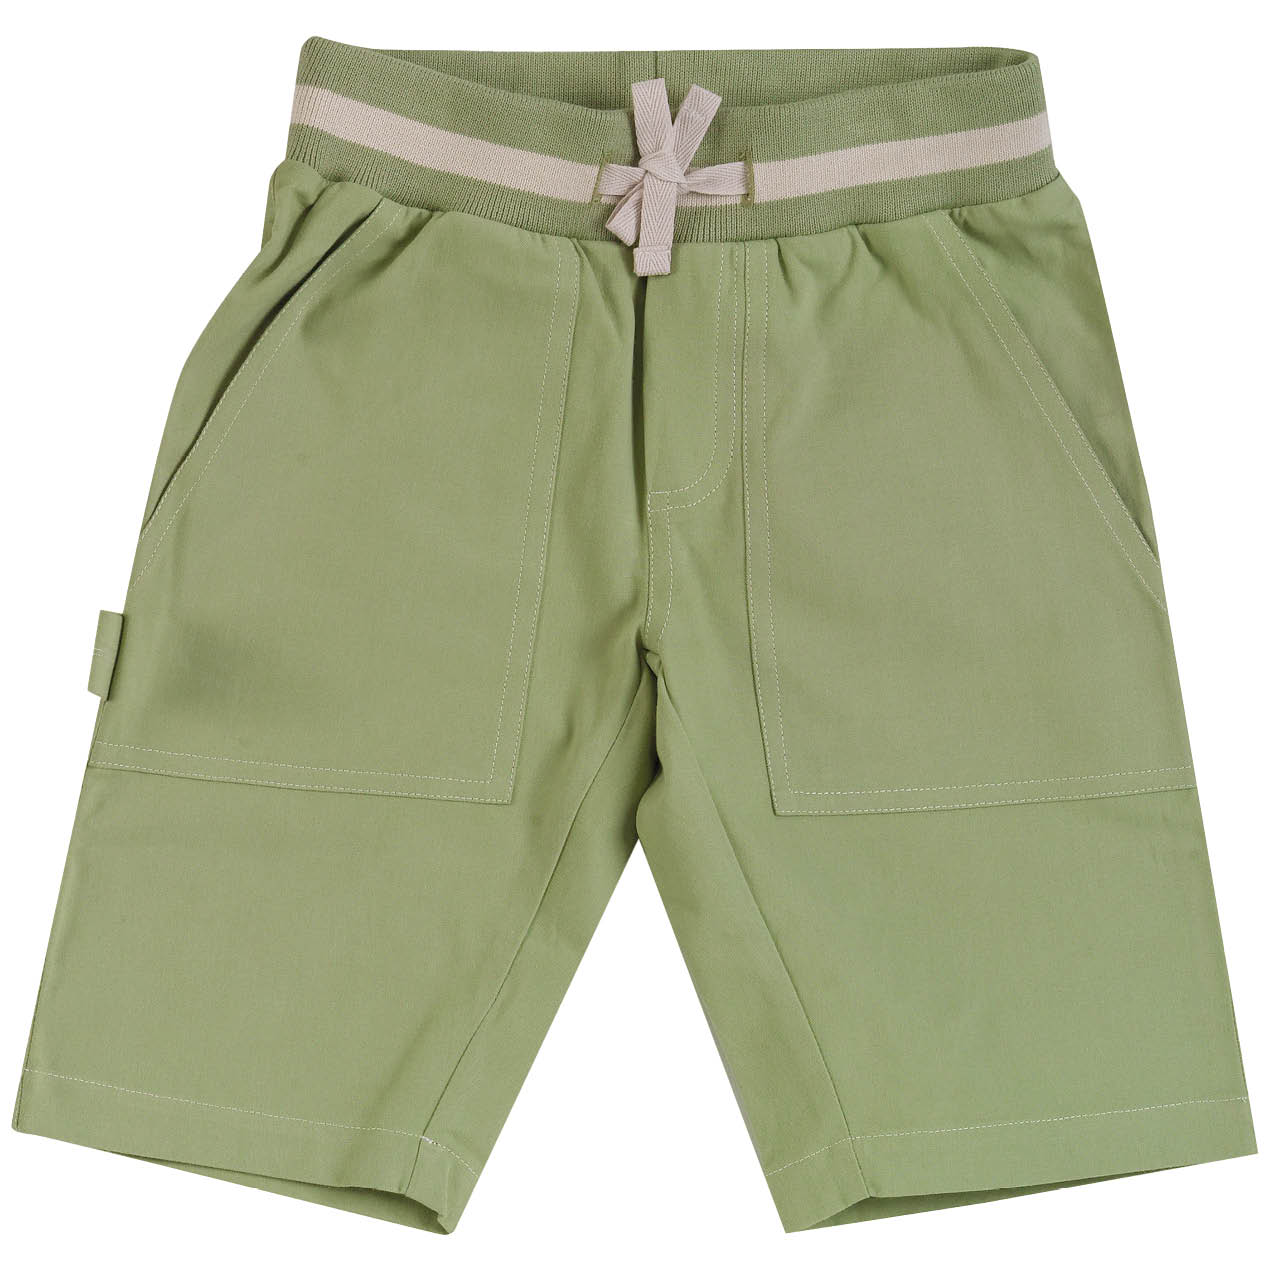 Leichte, robuste Twill Shorts grün